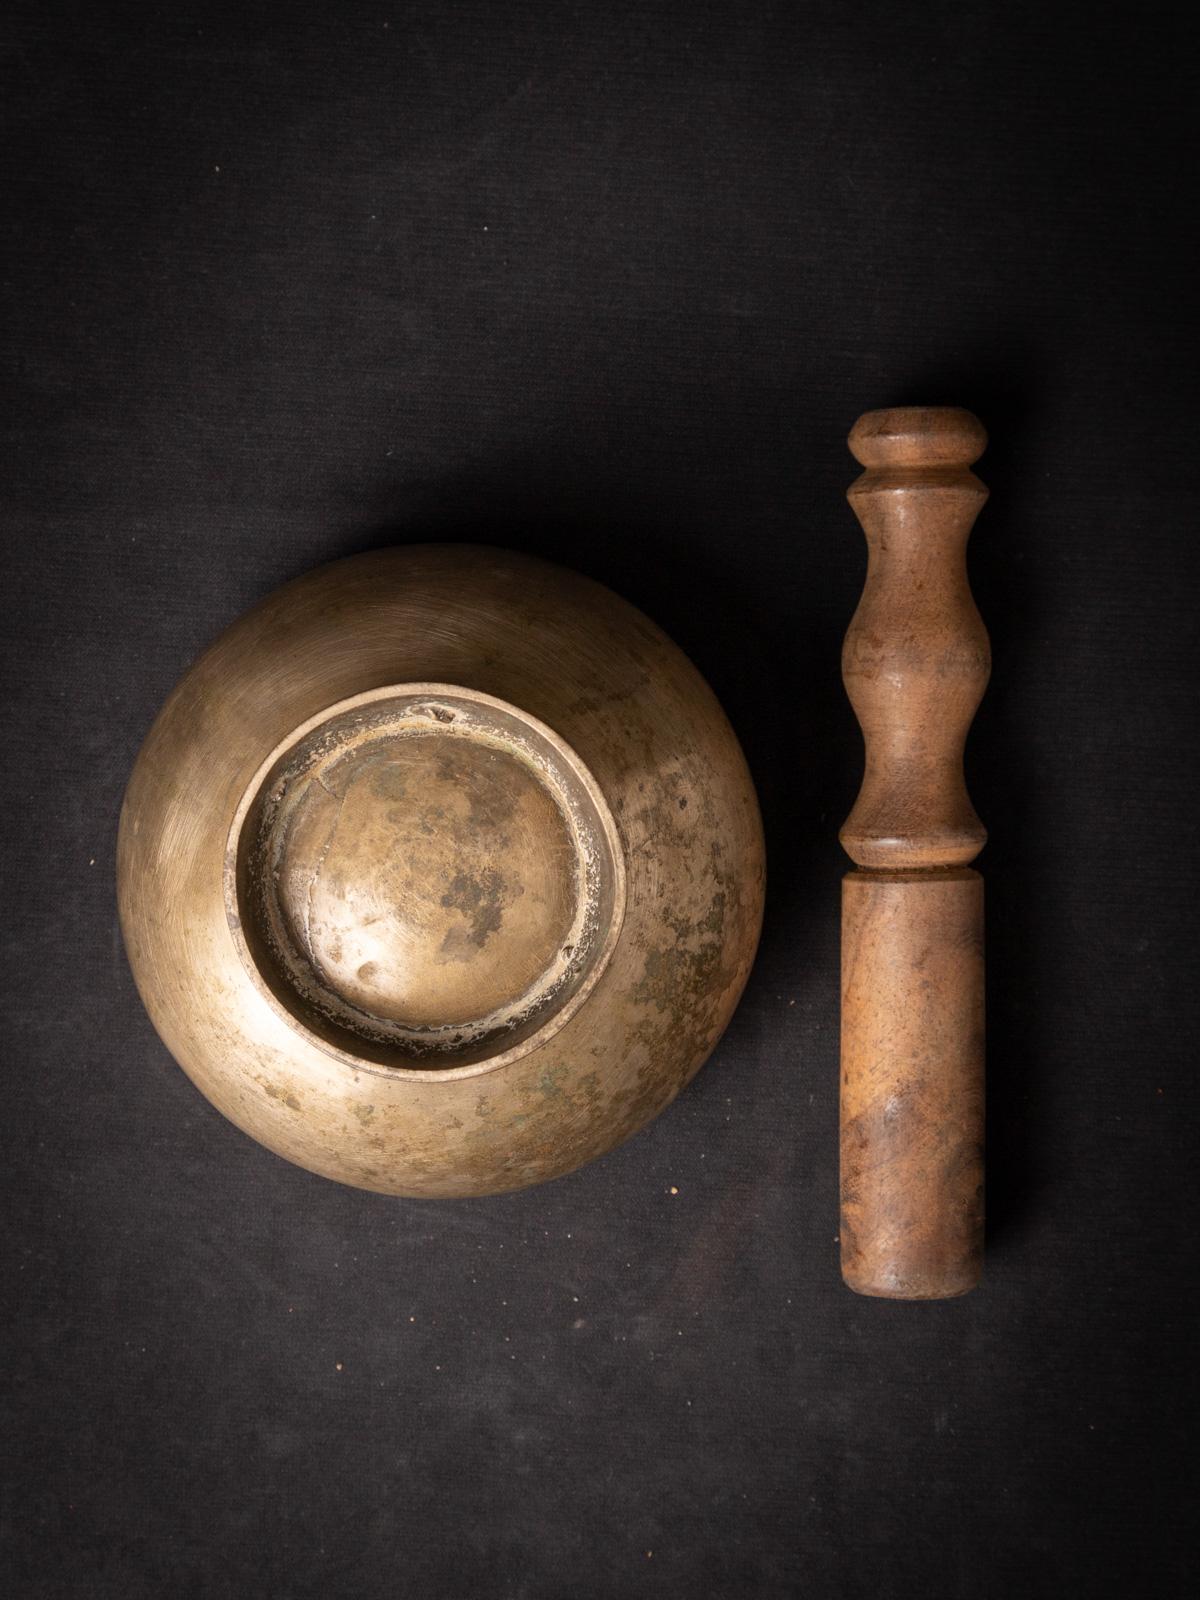 Ancien bol chantant népalais en bronze
Matière : bronze
8,8 cm de haut
13,5 cm de diamètre
Début du 20e siècle
Poids : 613 grammes
Originaire du Népal